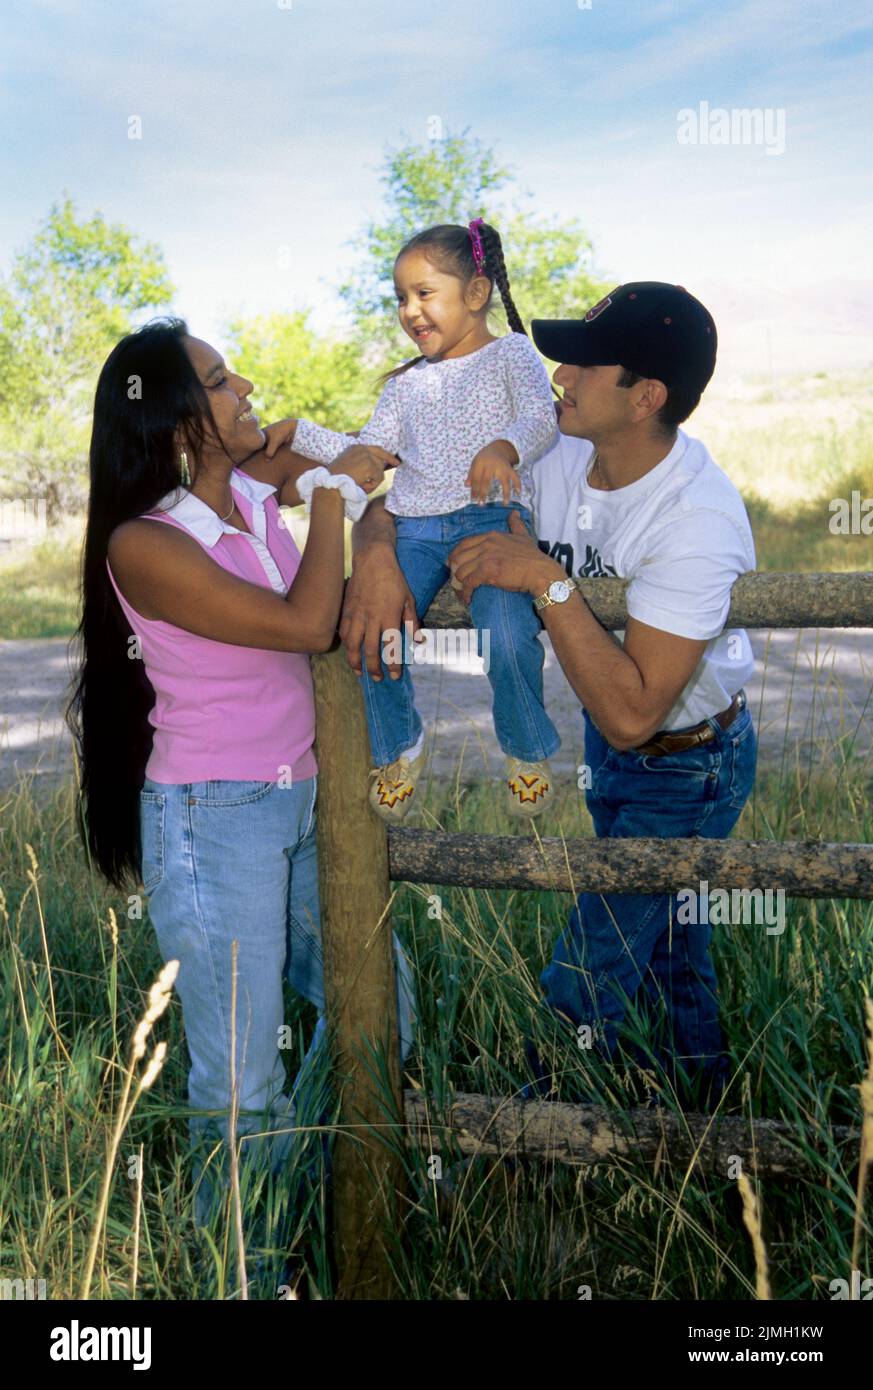 Familia nativa americana de una hija de 4 años con sus padres se sientan en un poste de granja y cerca de un carril. Foto de stock